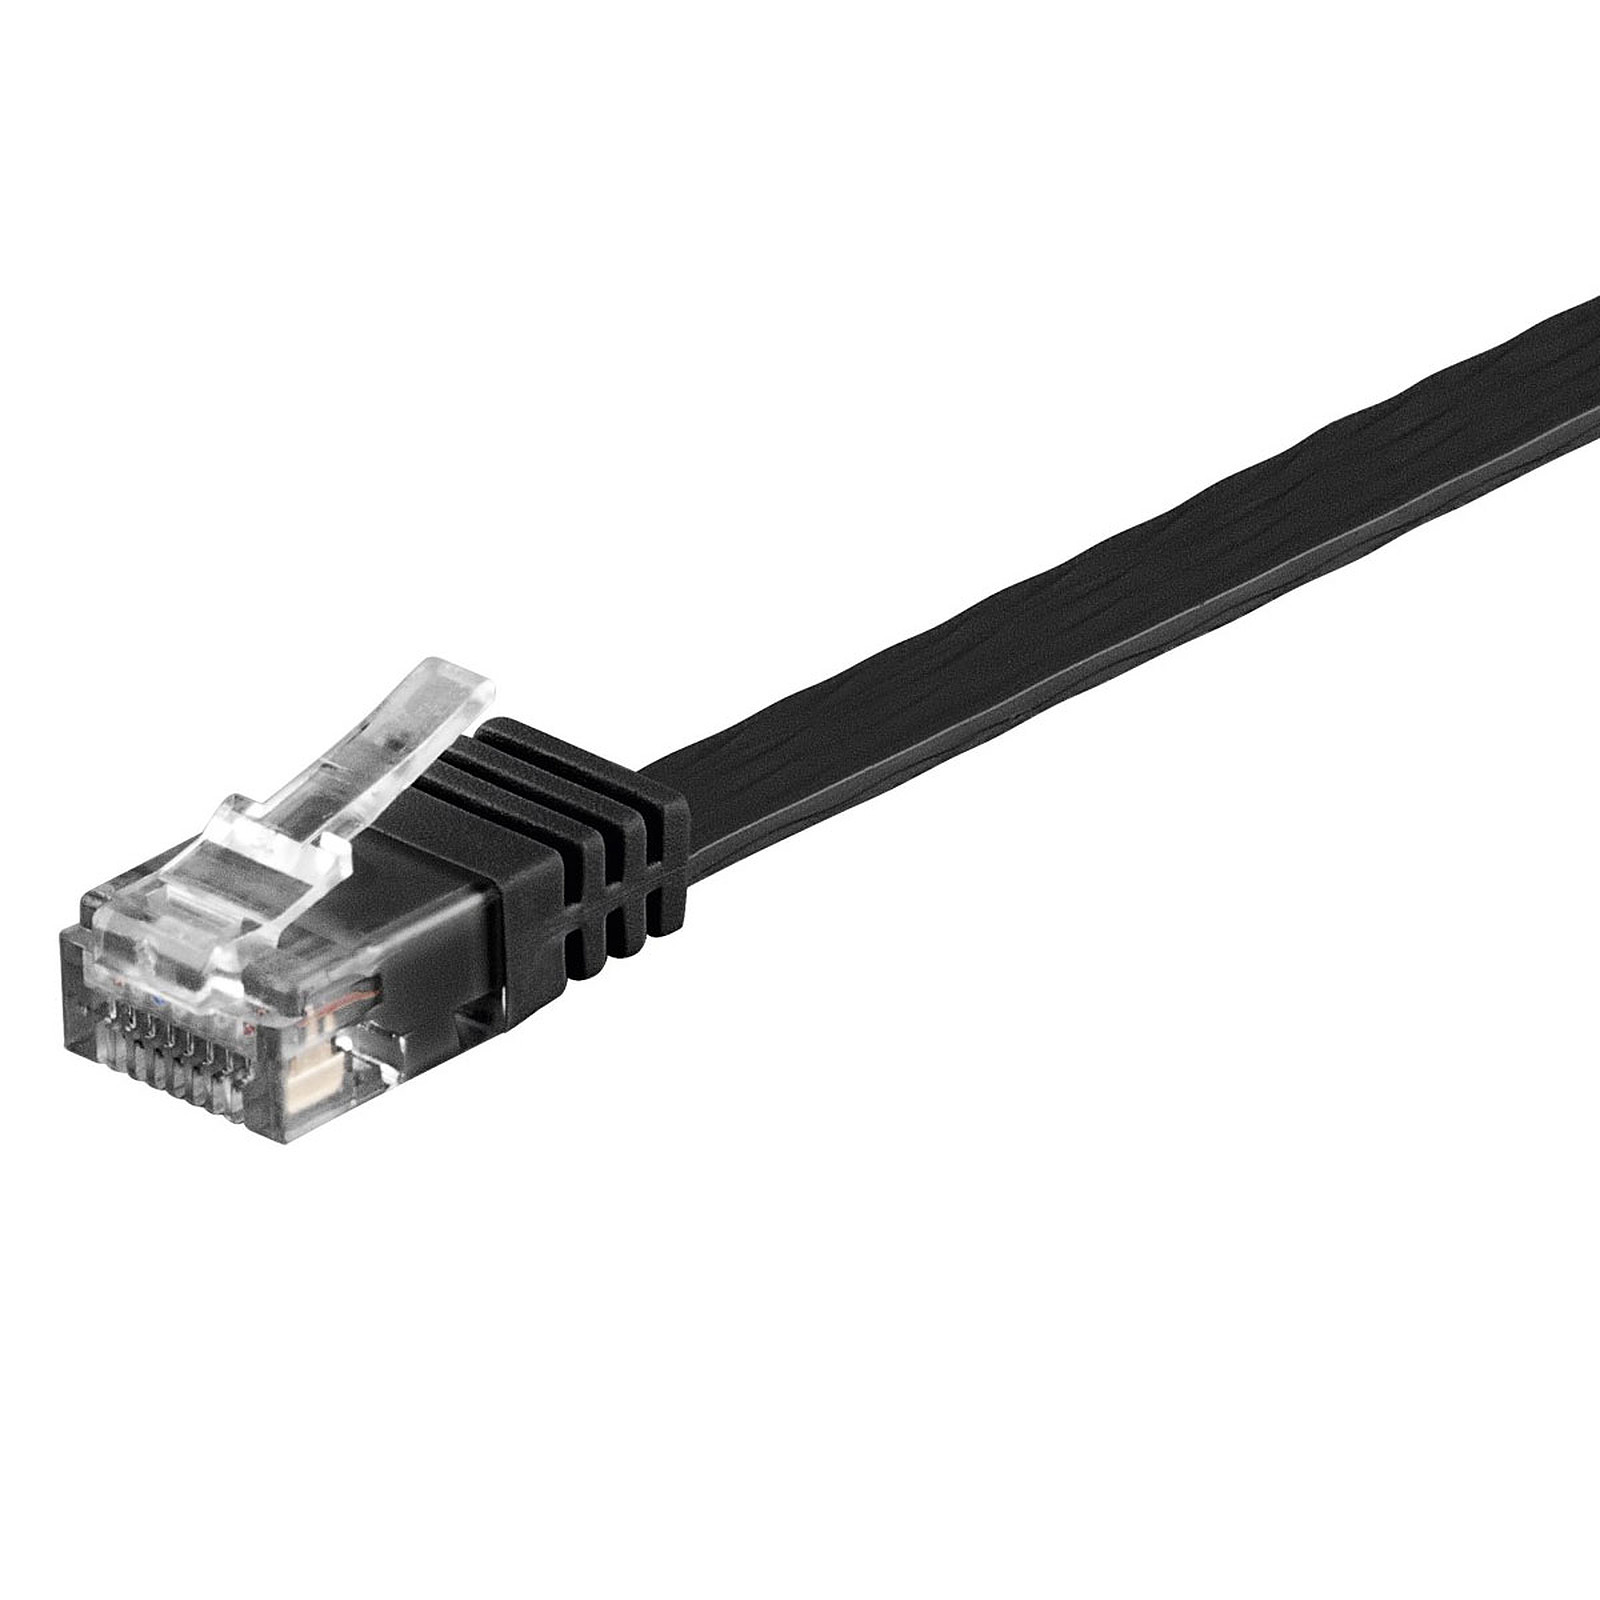 Cable RJ45 plat categorie 6 U/UTP 20 m (Noir) - Cable RJ45 Generique